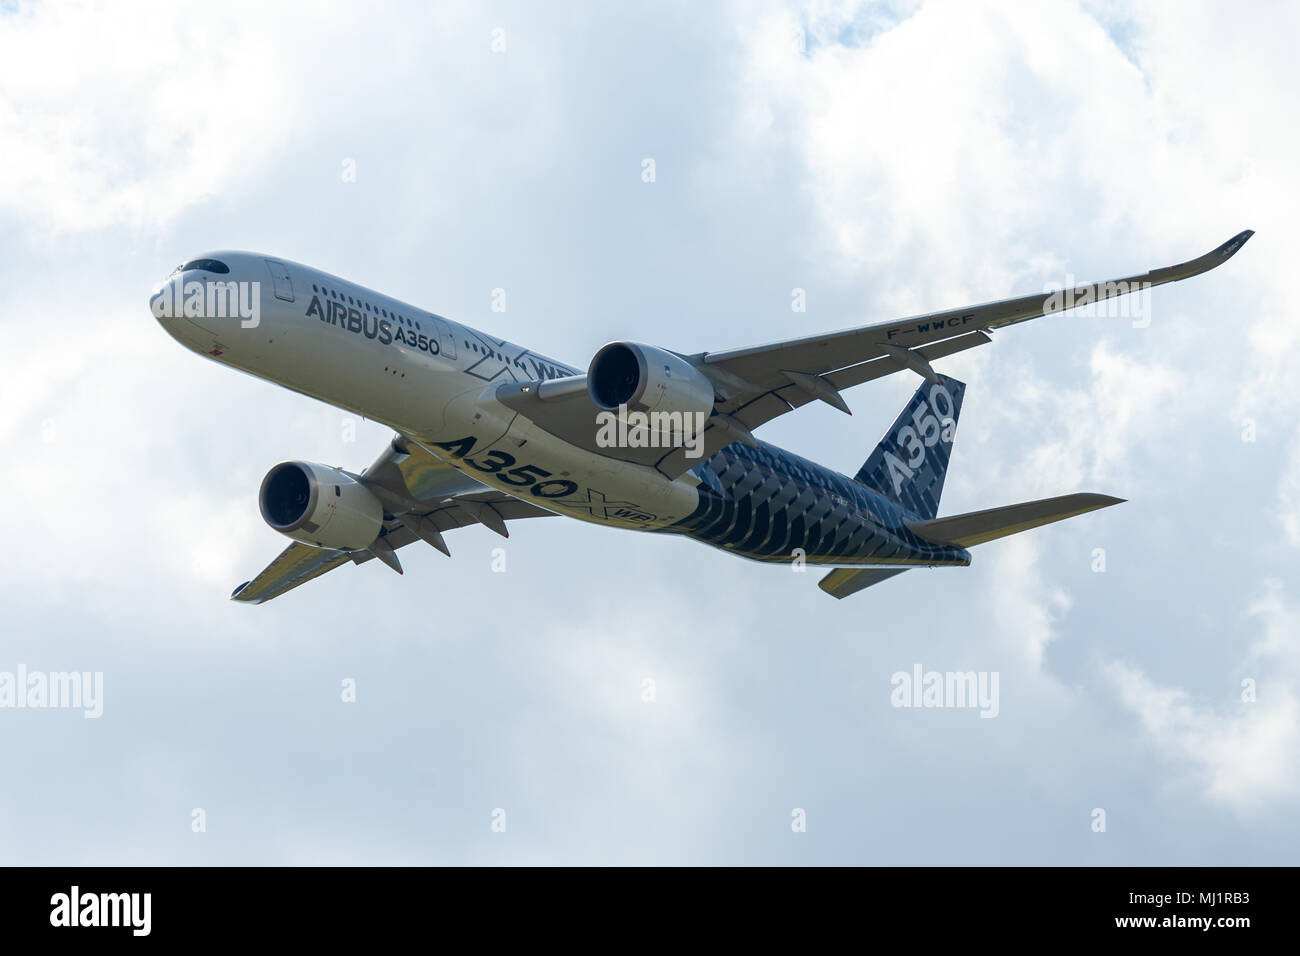 BERLIN/Deutschland - am 28. APRIL 2018: Airbus A350 XWB Flugzeug fliegt am Flughafen Berlin- Schönefeld. Der Airbus A350 XWB ist eine Familie von langfristigen, twin-e Stockfoto